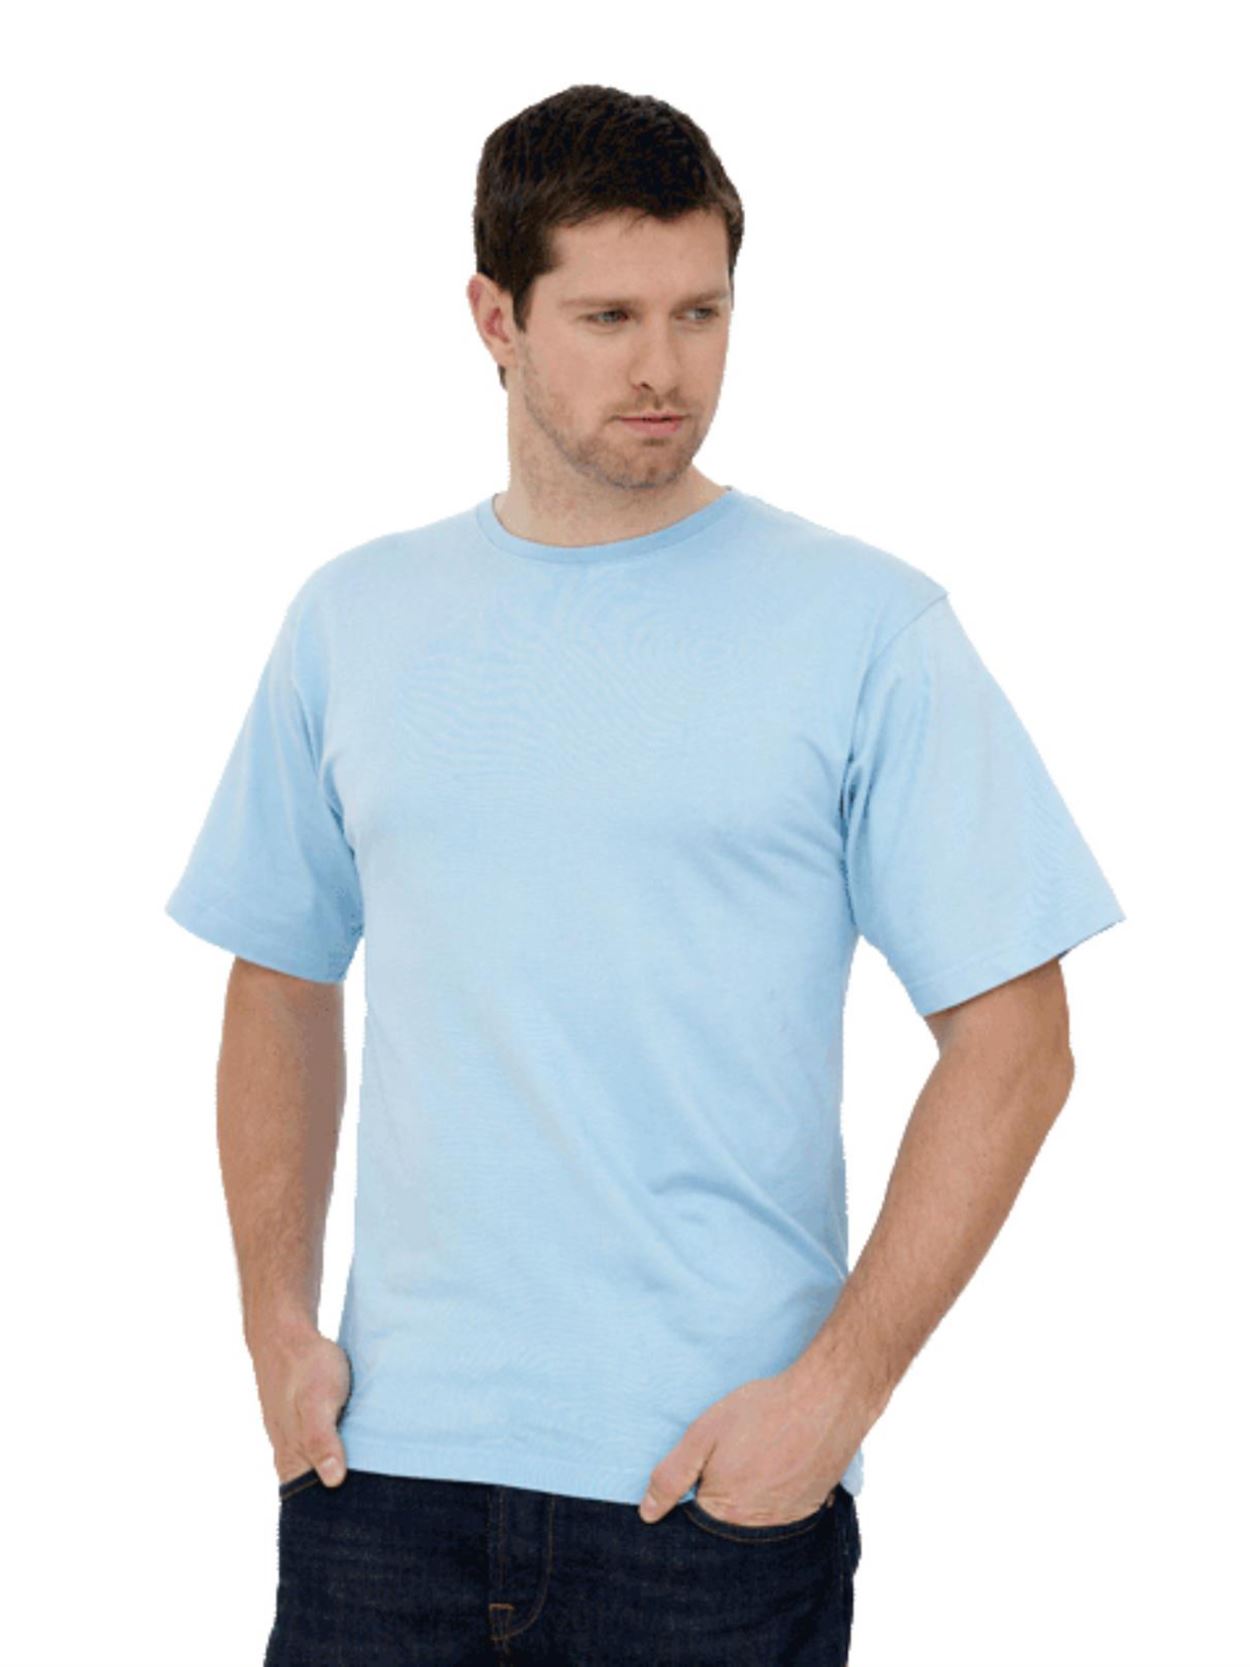 UC301 Workwear T Shirt Image 3